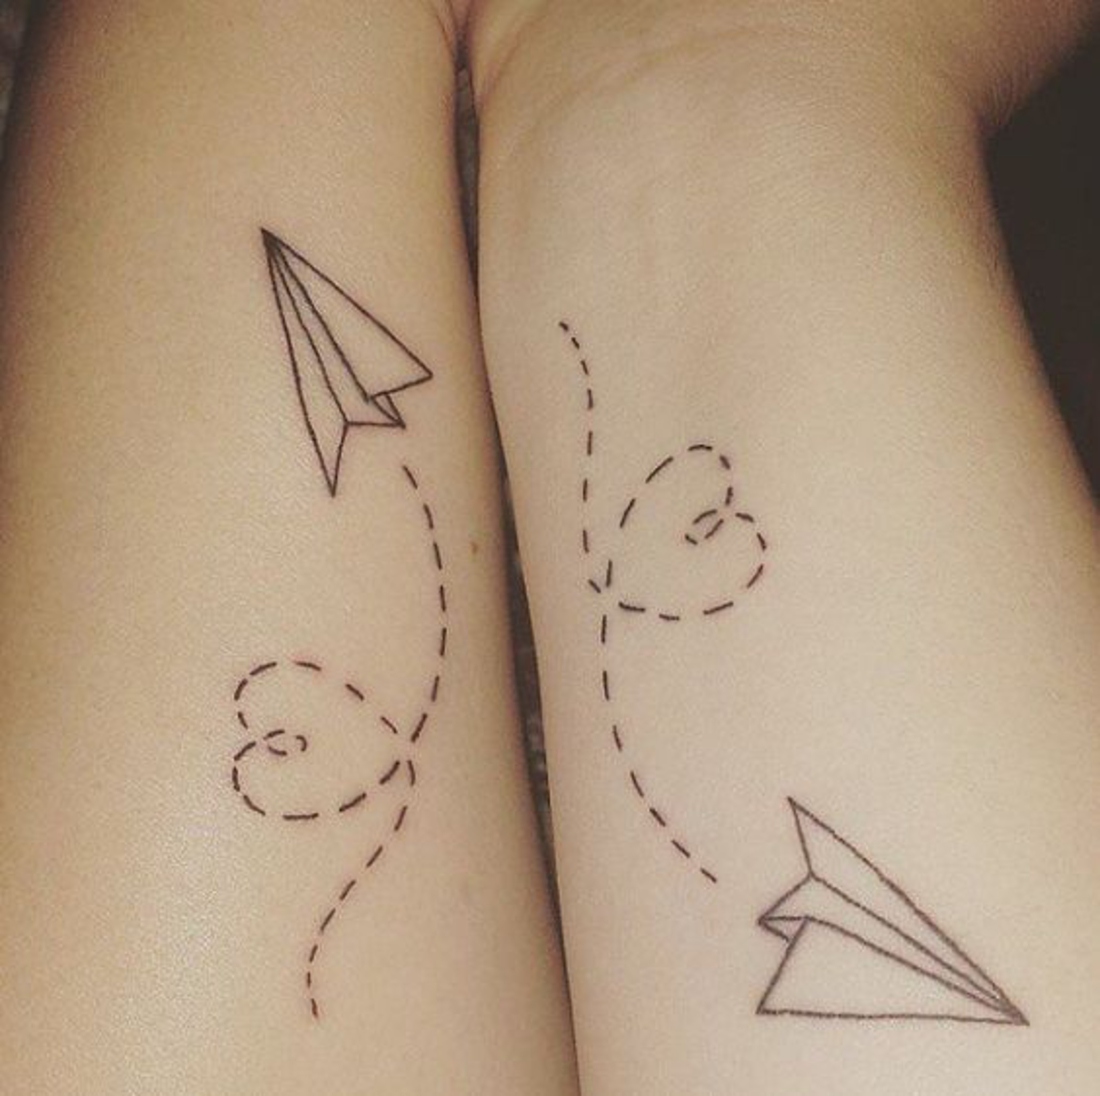 tatuajes bonitos, pareja con tatuaje interesante en la mano, origami, corazones